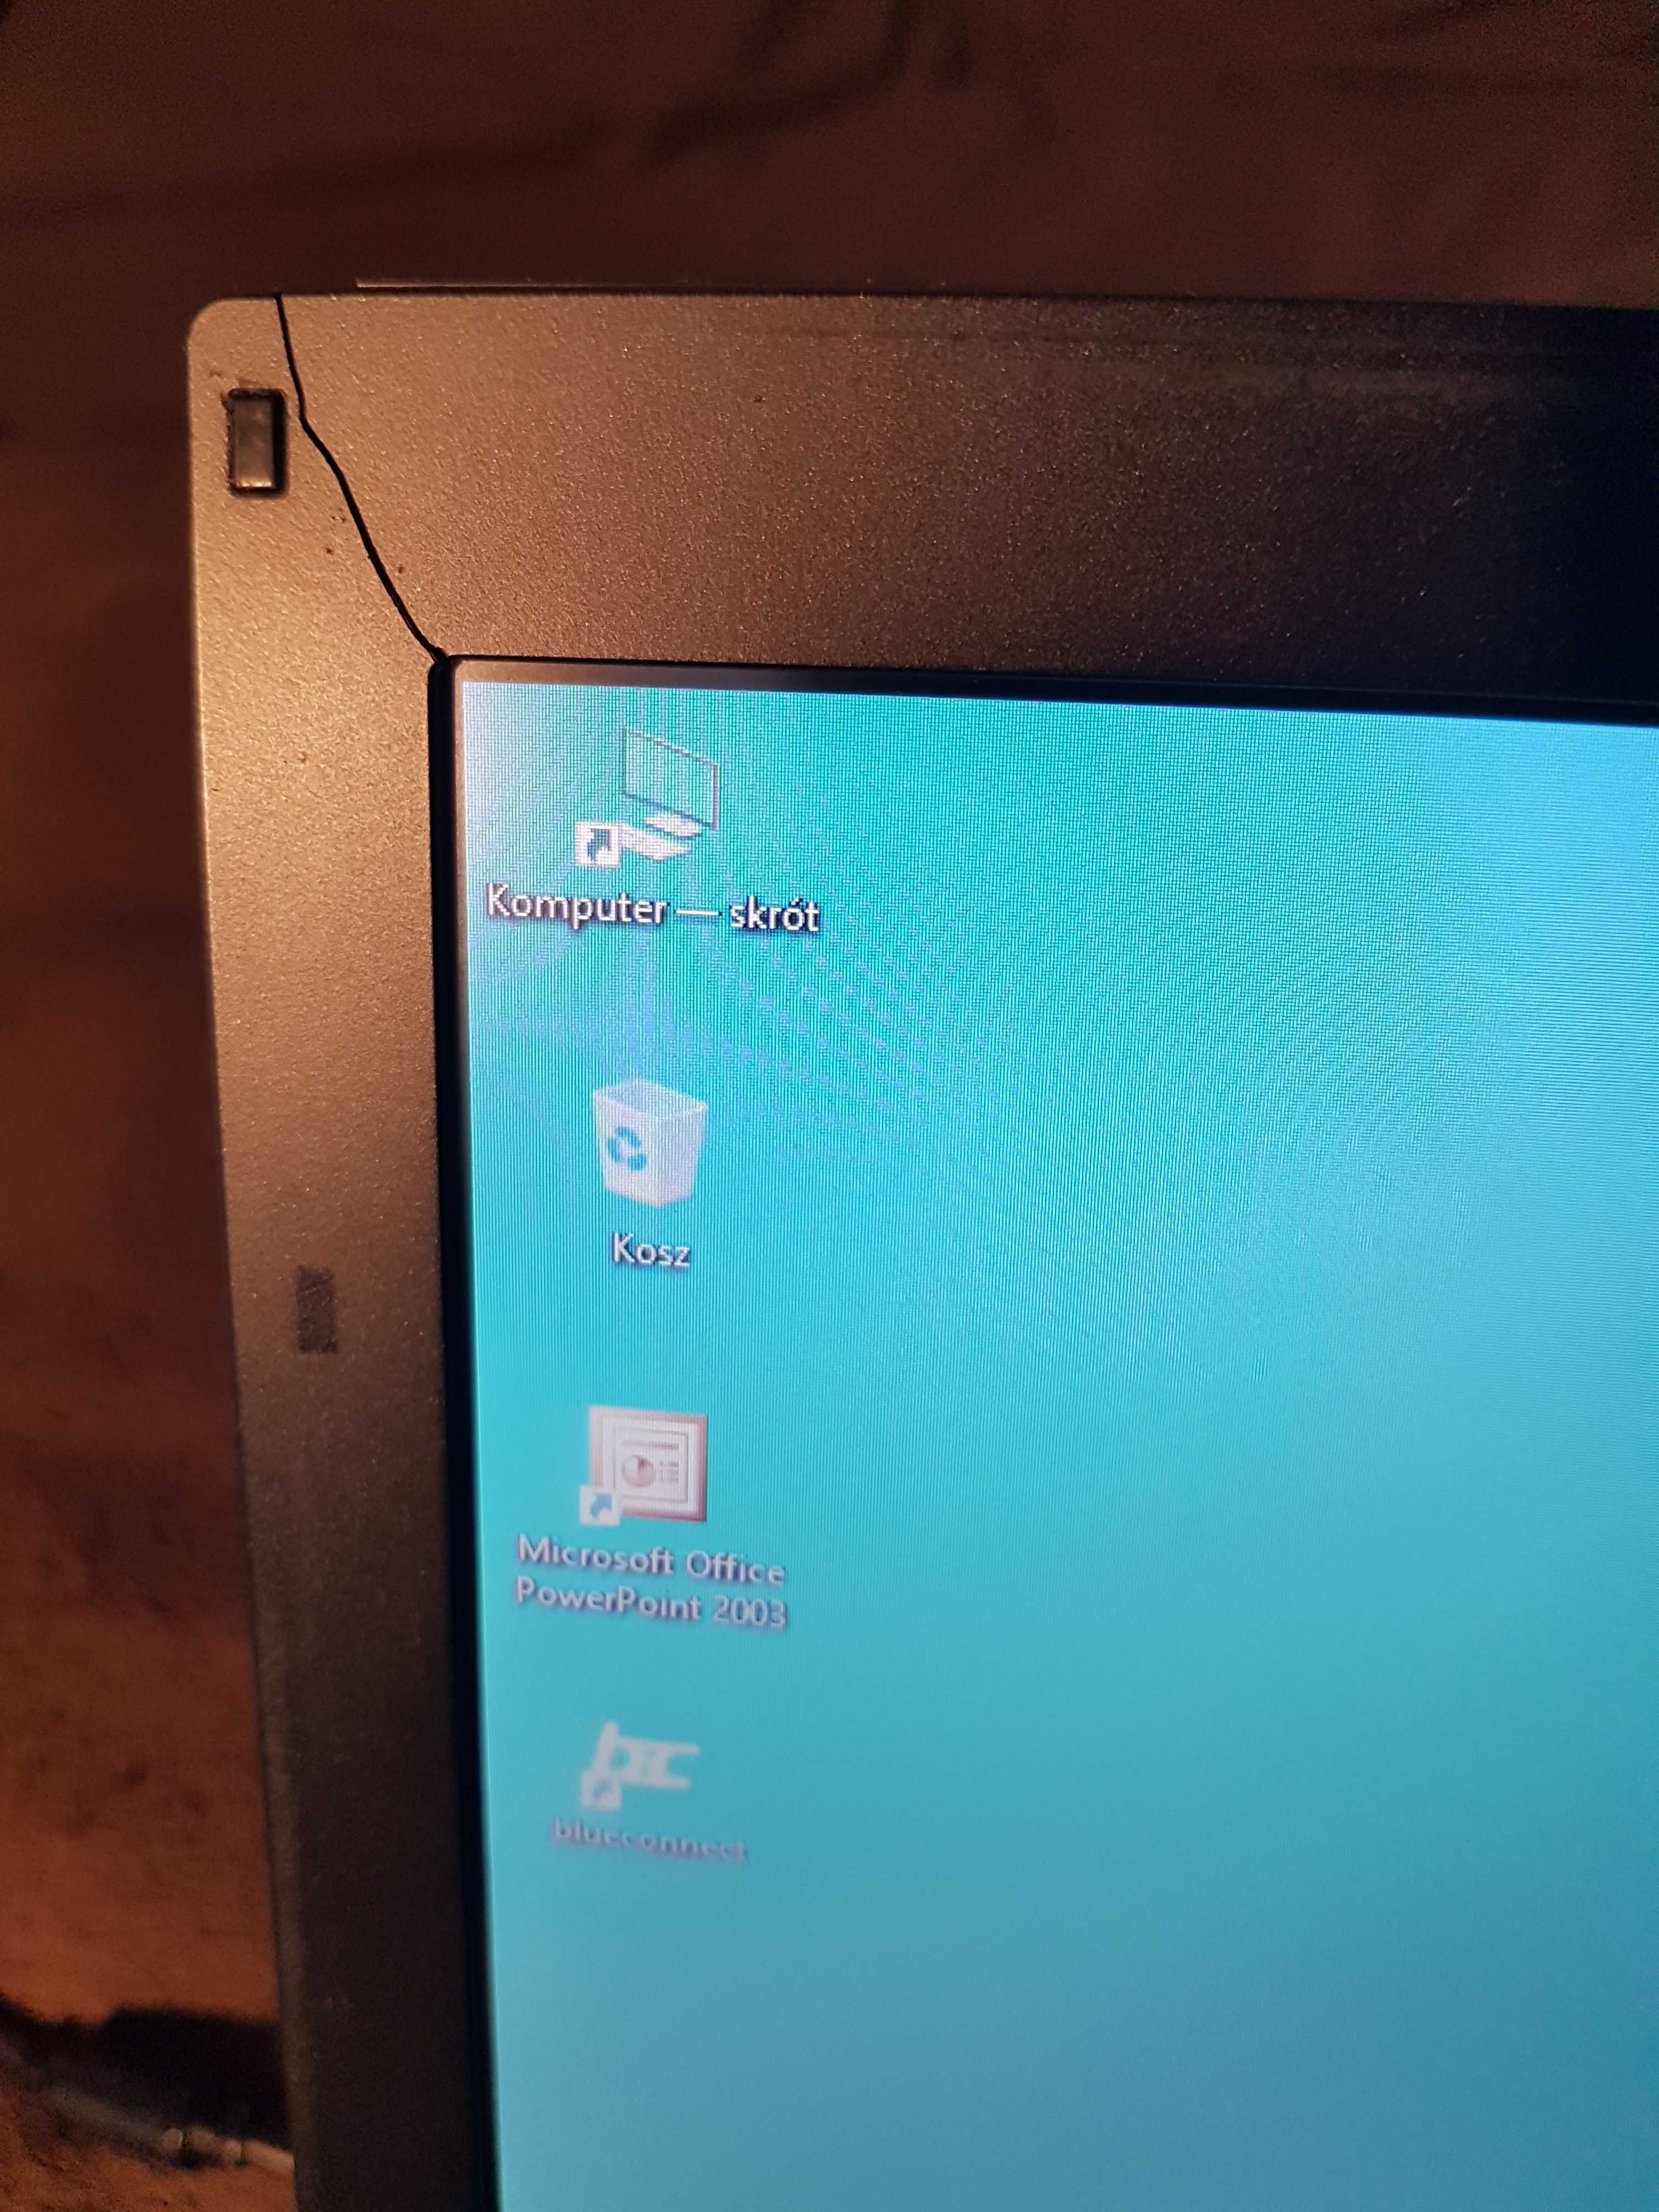 Laptop Dell E6410